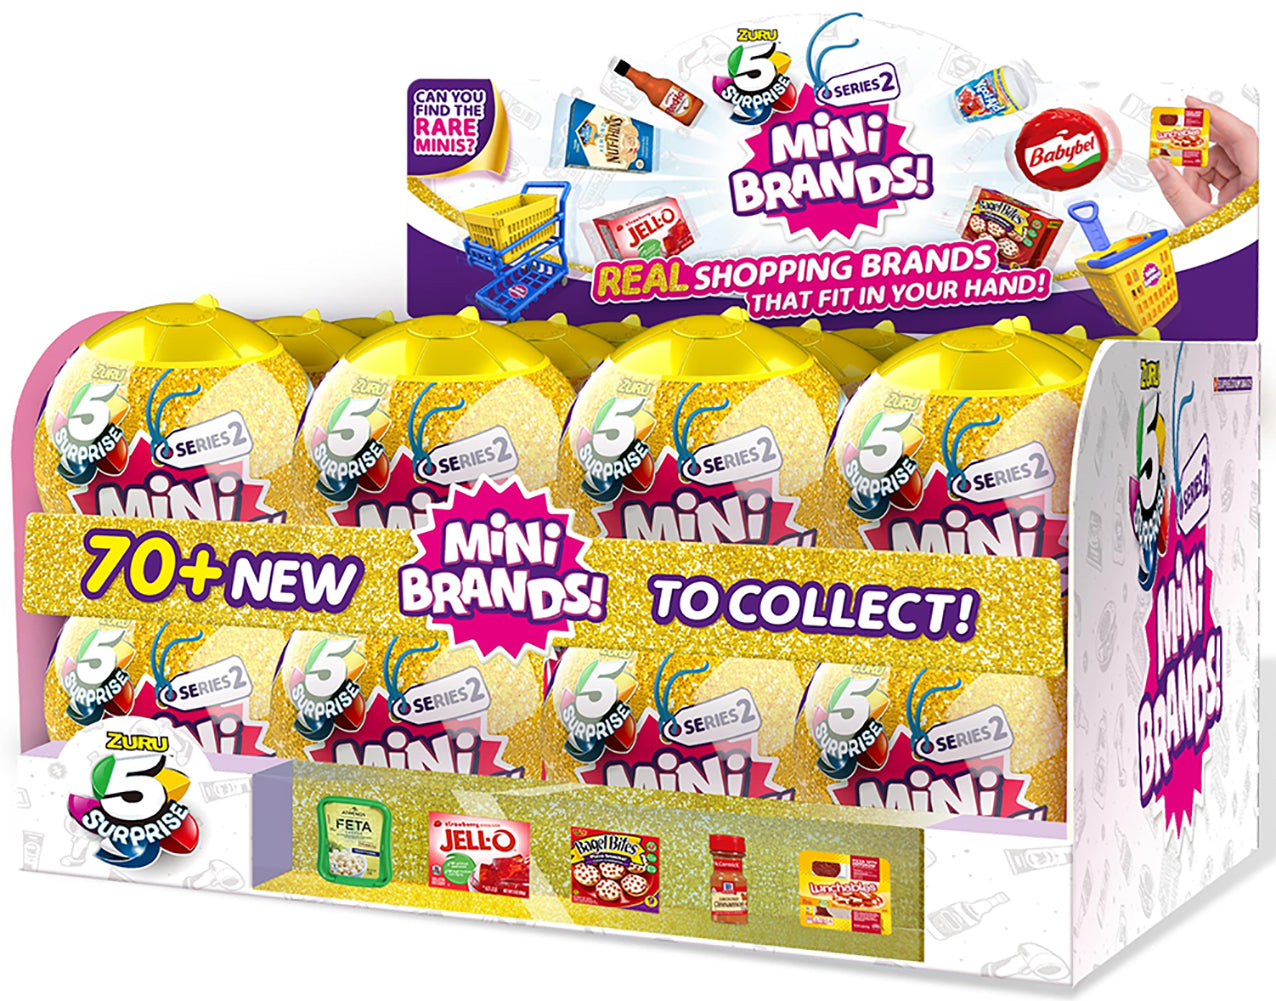 Zuru 5 Surprise Mini Brands Disney Store Edition Series 2 Surprise Box  Unboxing Review 